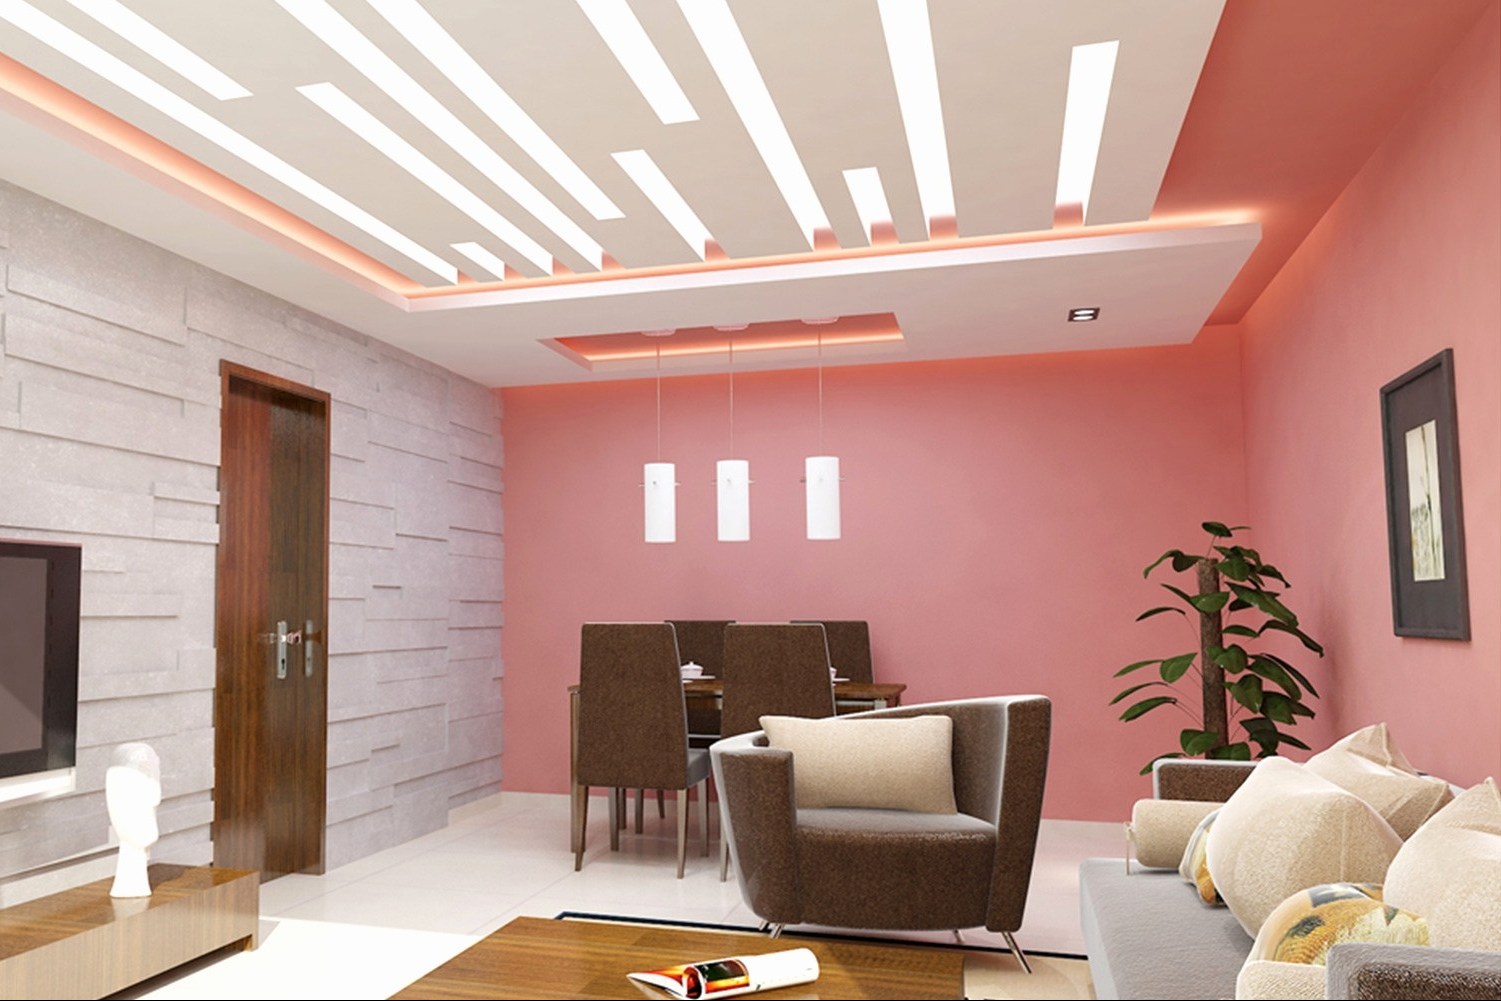 harga wallpaper plafon langit,soffitto,interior design,camera,soggiorno,proprietà